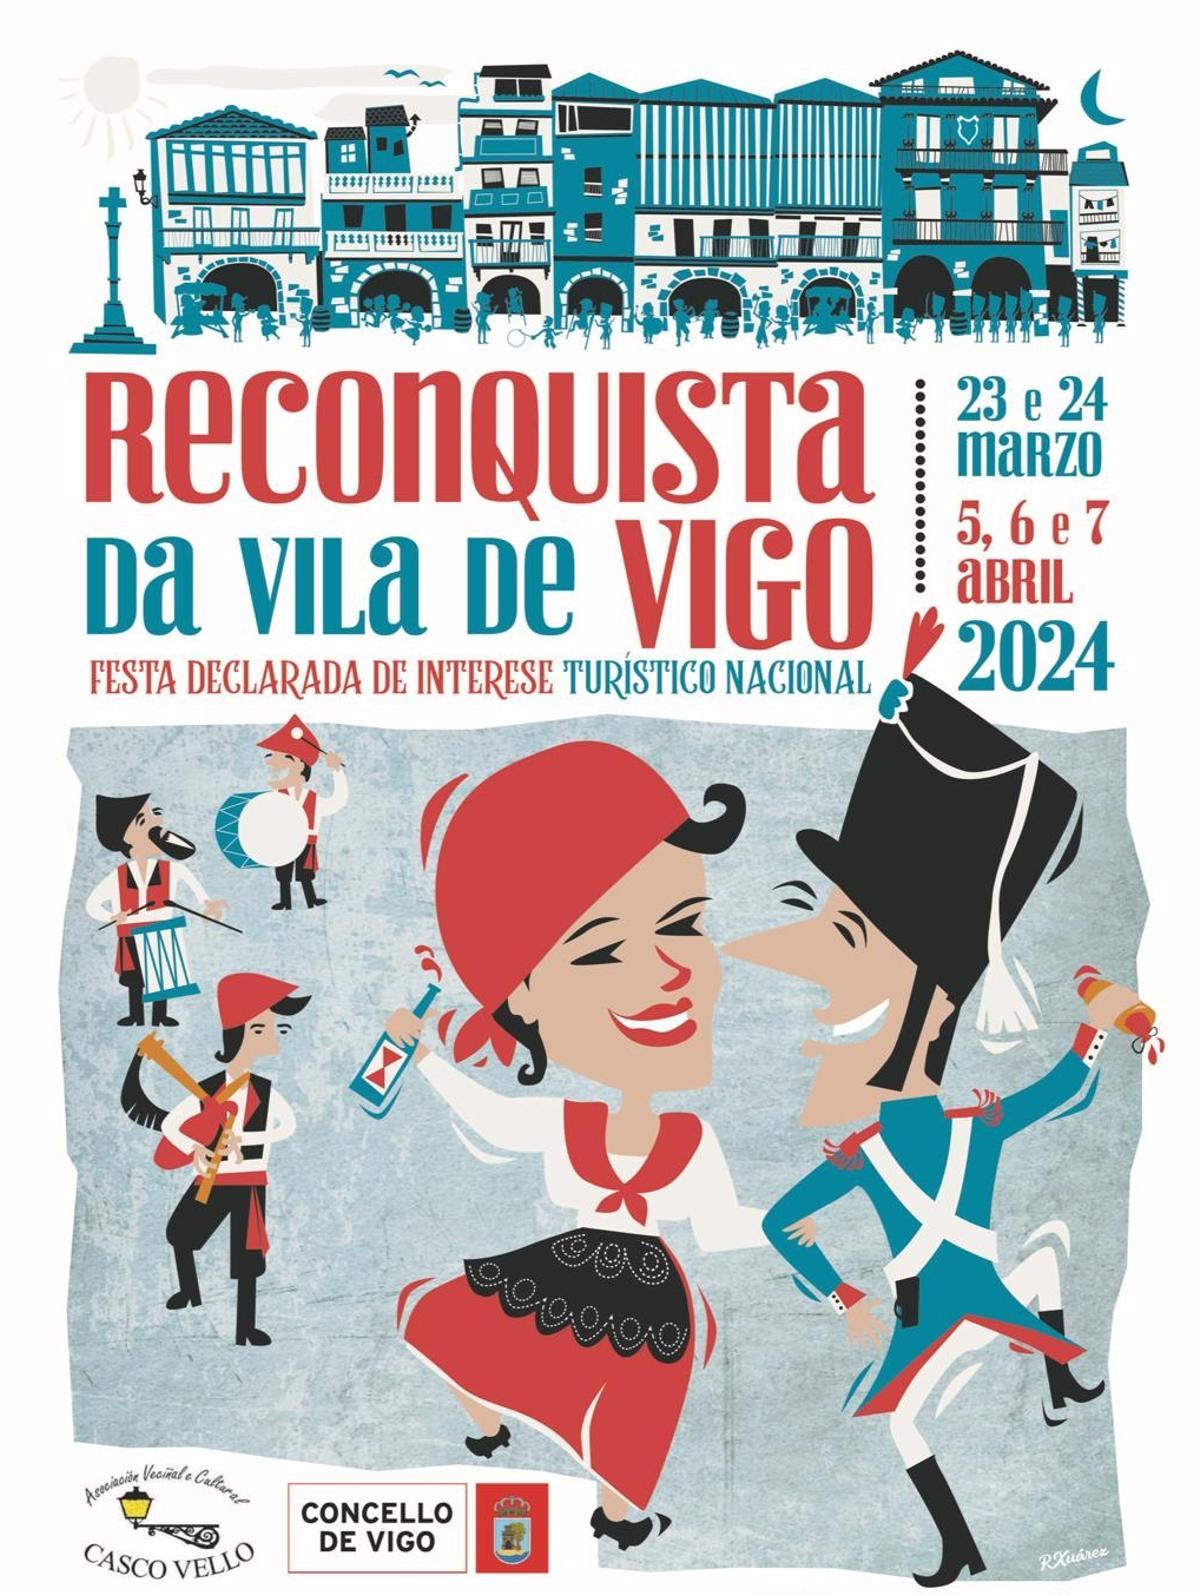 Cartel oficial de la Reconquista de Vigo diseñado por Rubén Suárez.